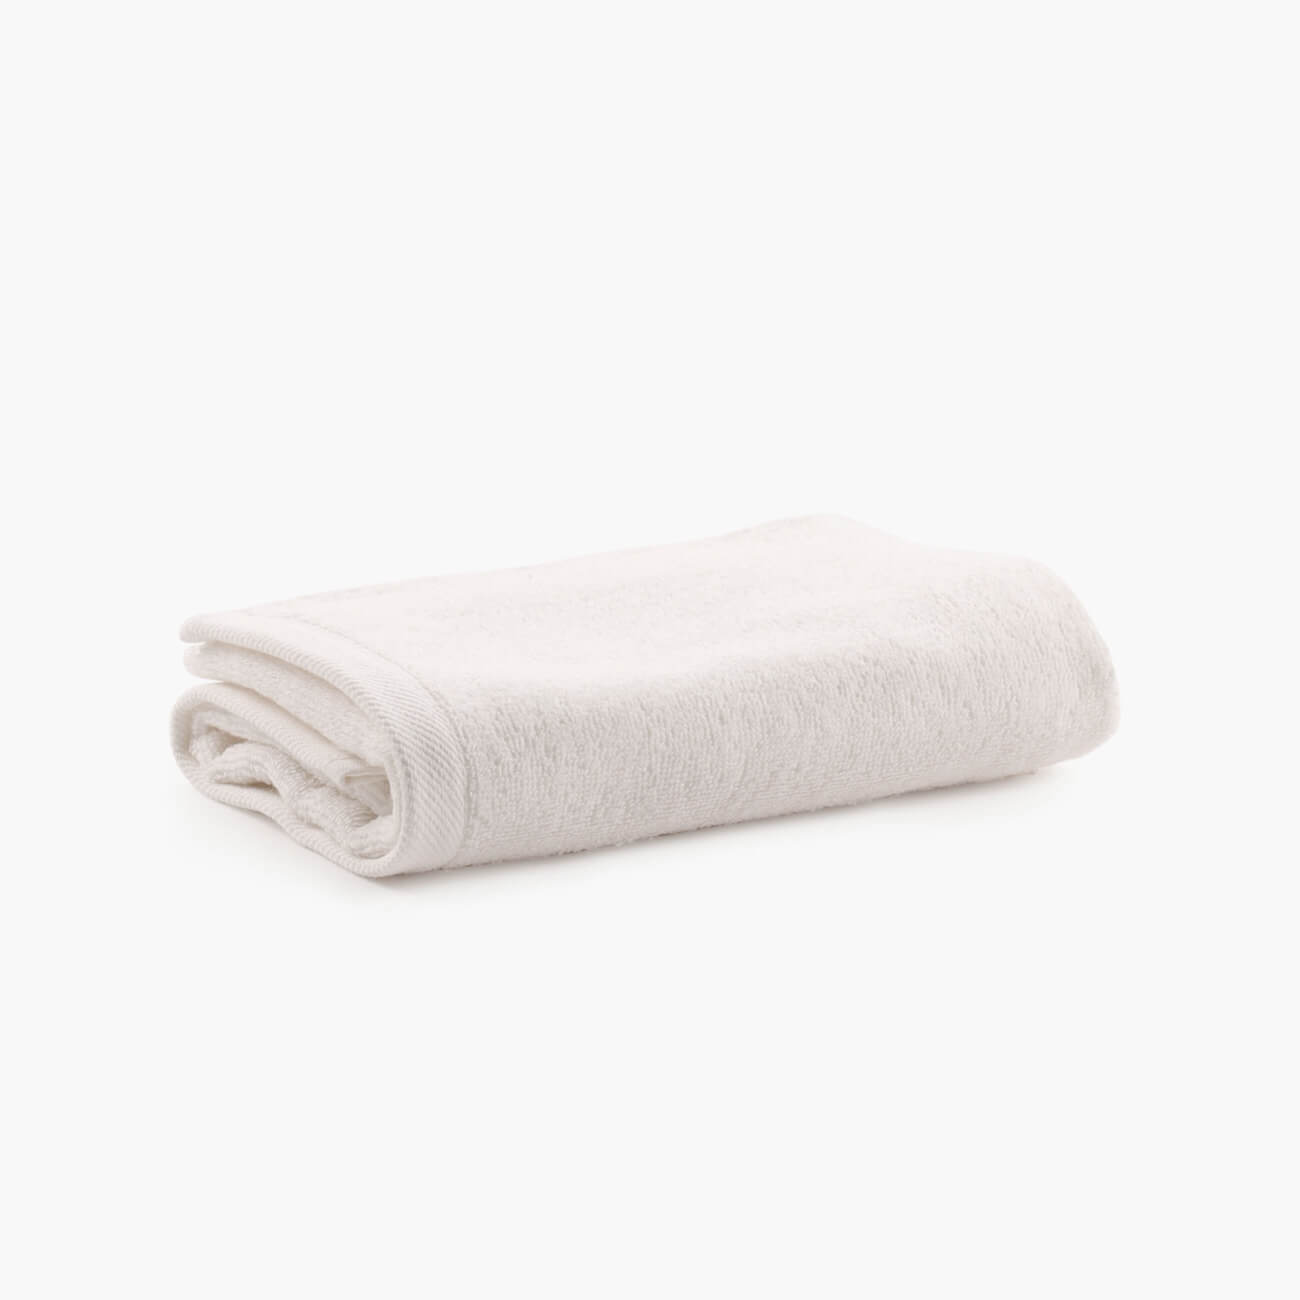 Полотенце, 40х60 см, хлопок, молочное, Wellness полотенце eumenia 100x150 см серое